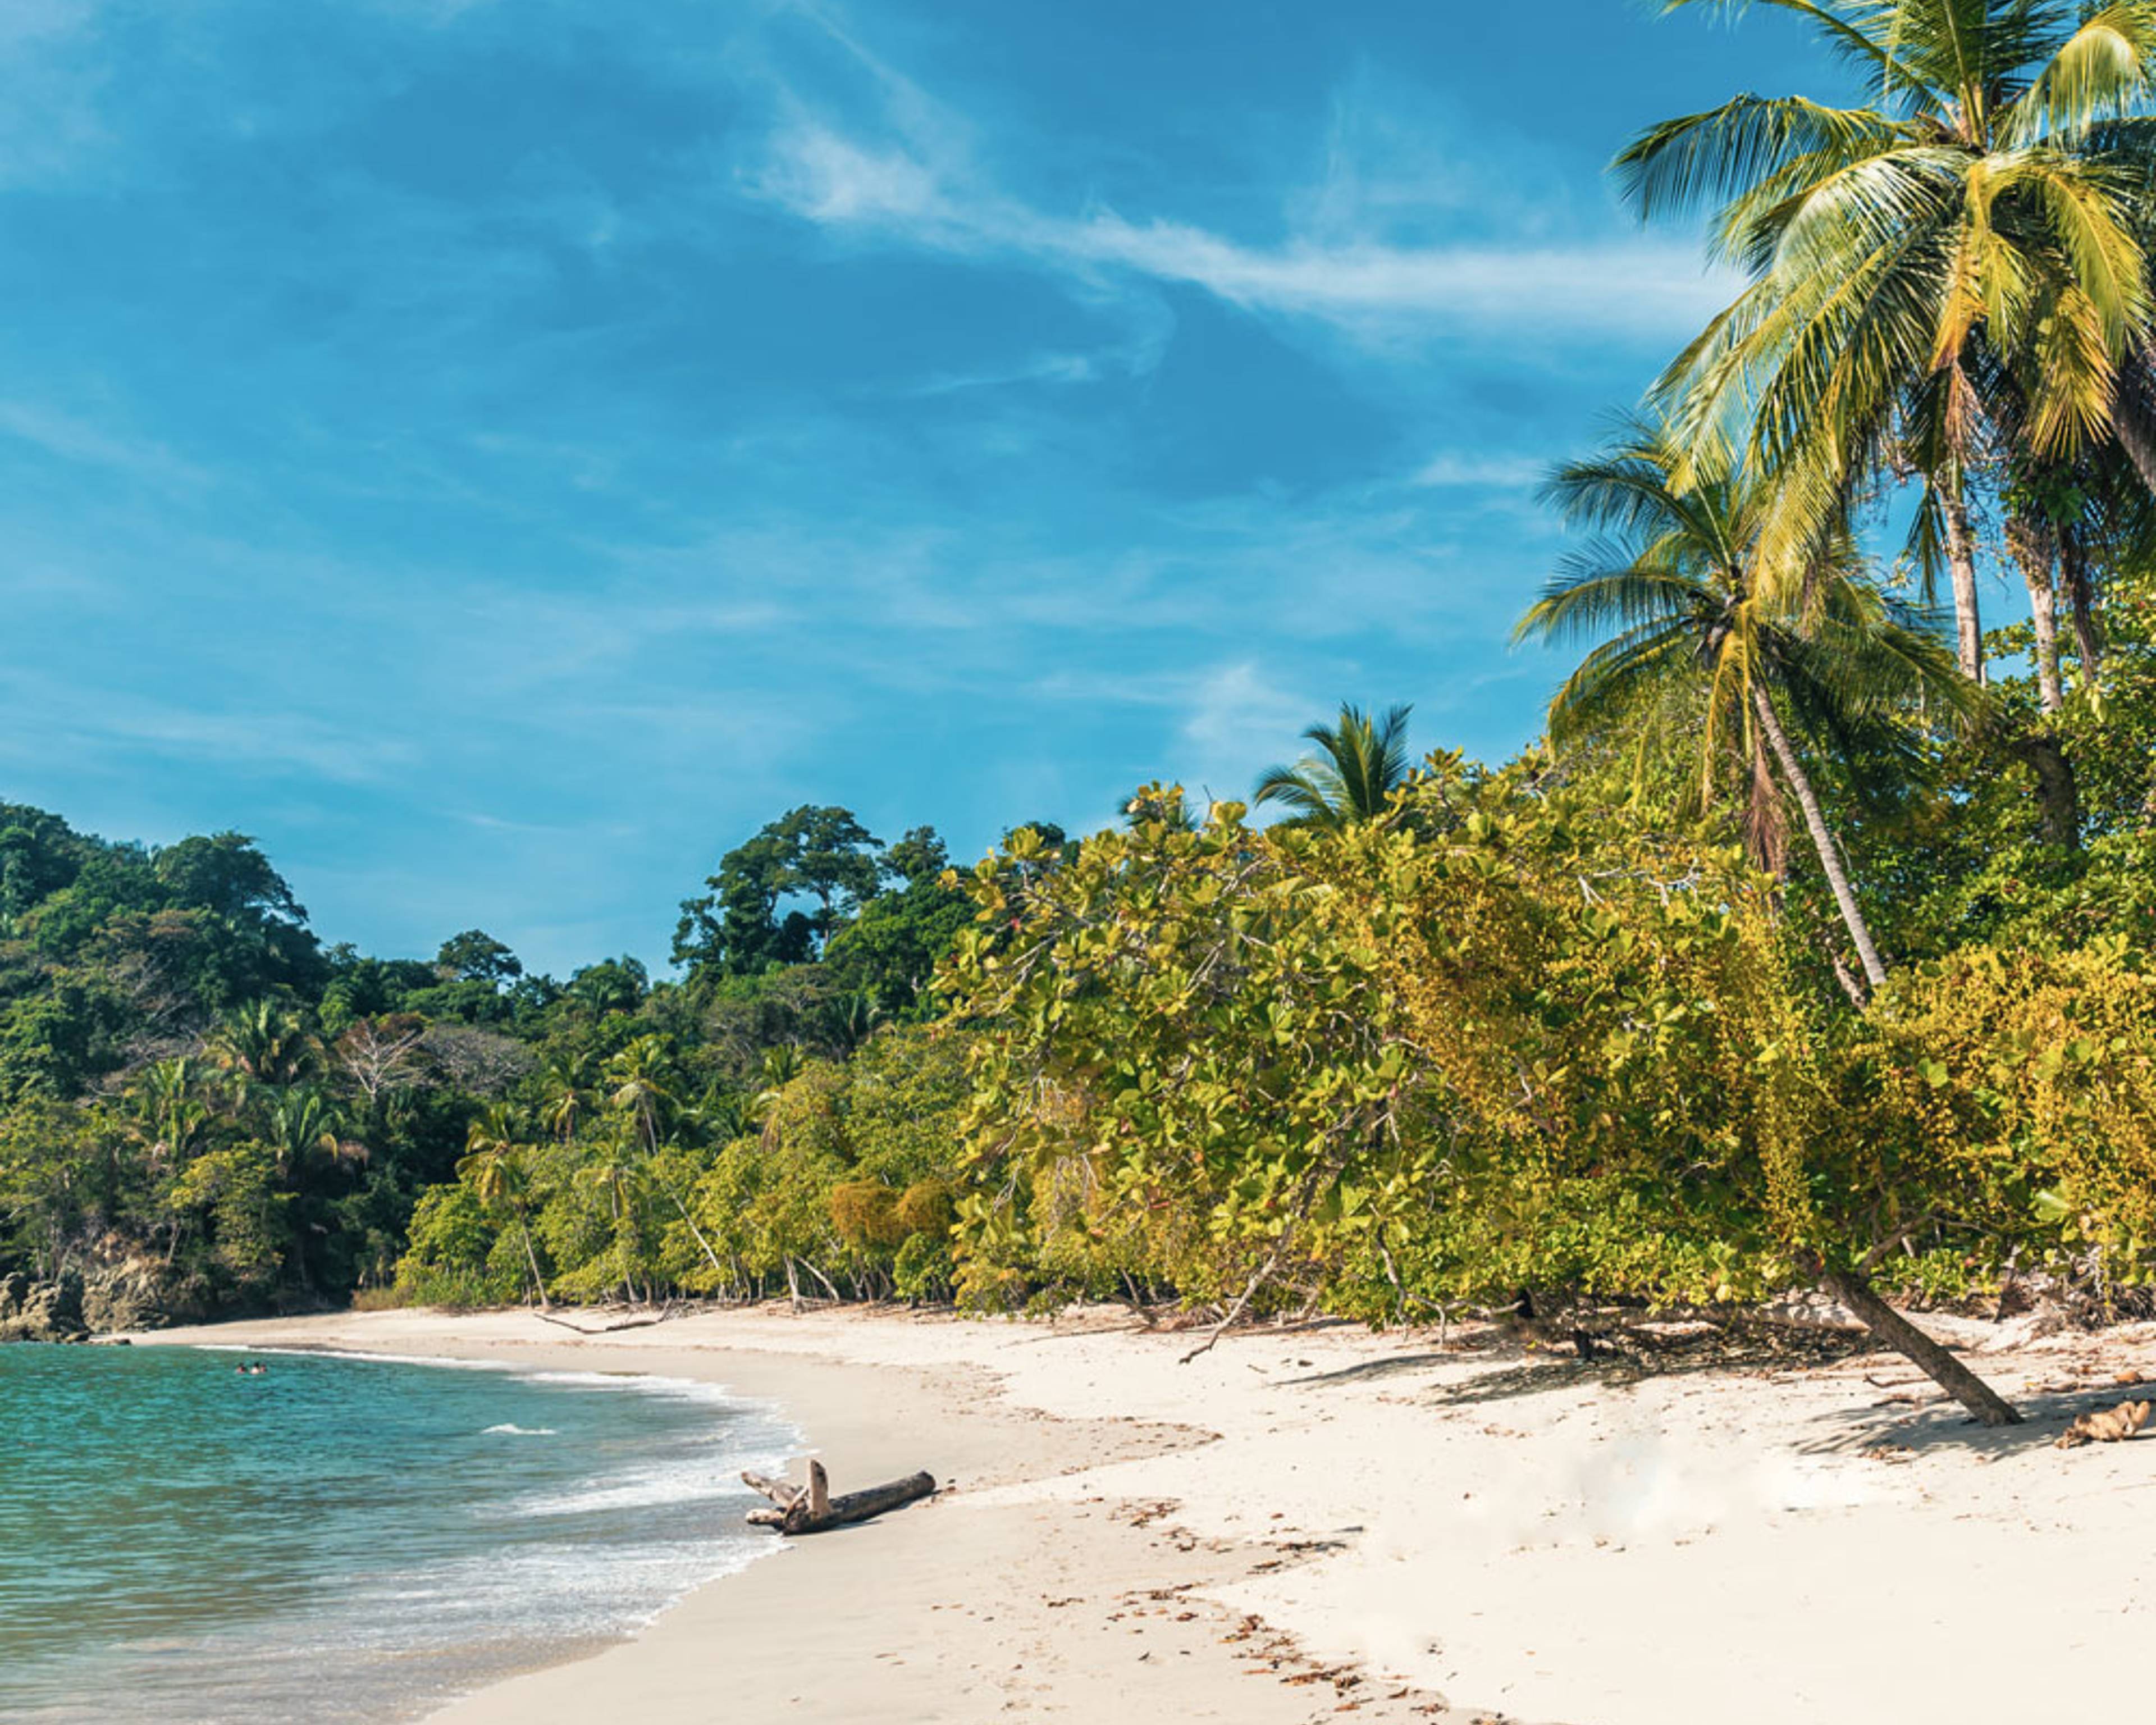 Découvrez les plus belles plages lors de votre voyage au Costa-Rica 100% sur mesure